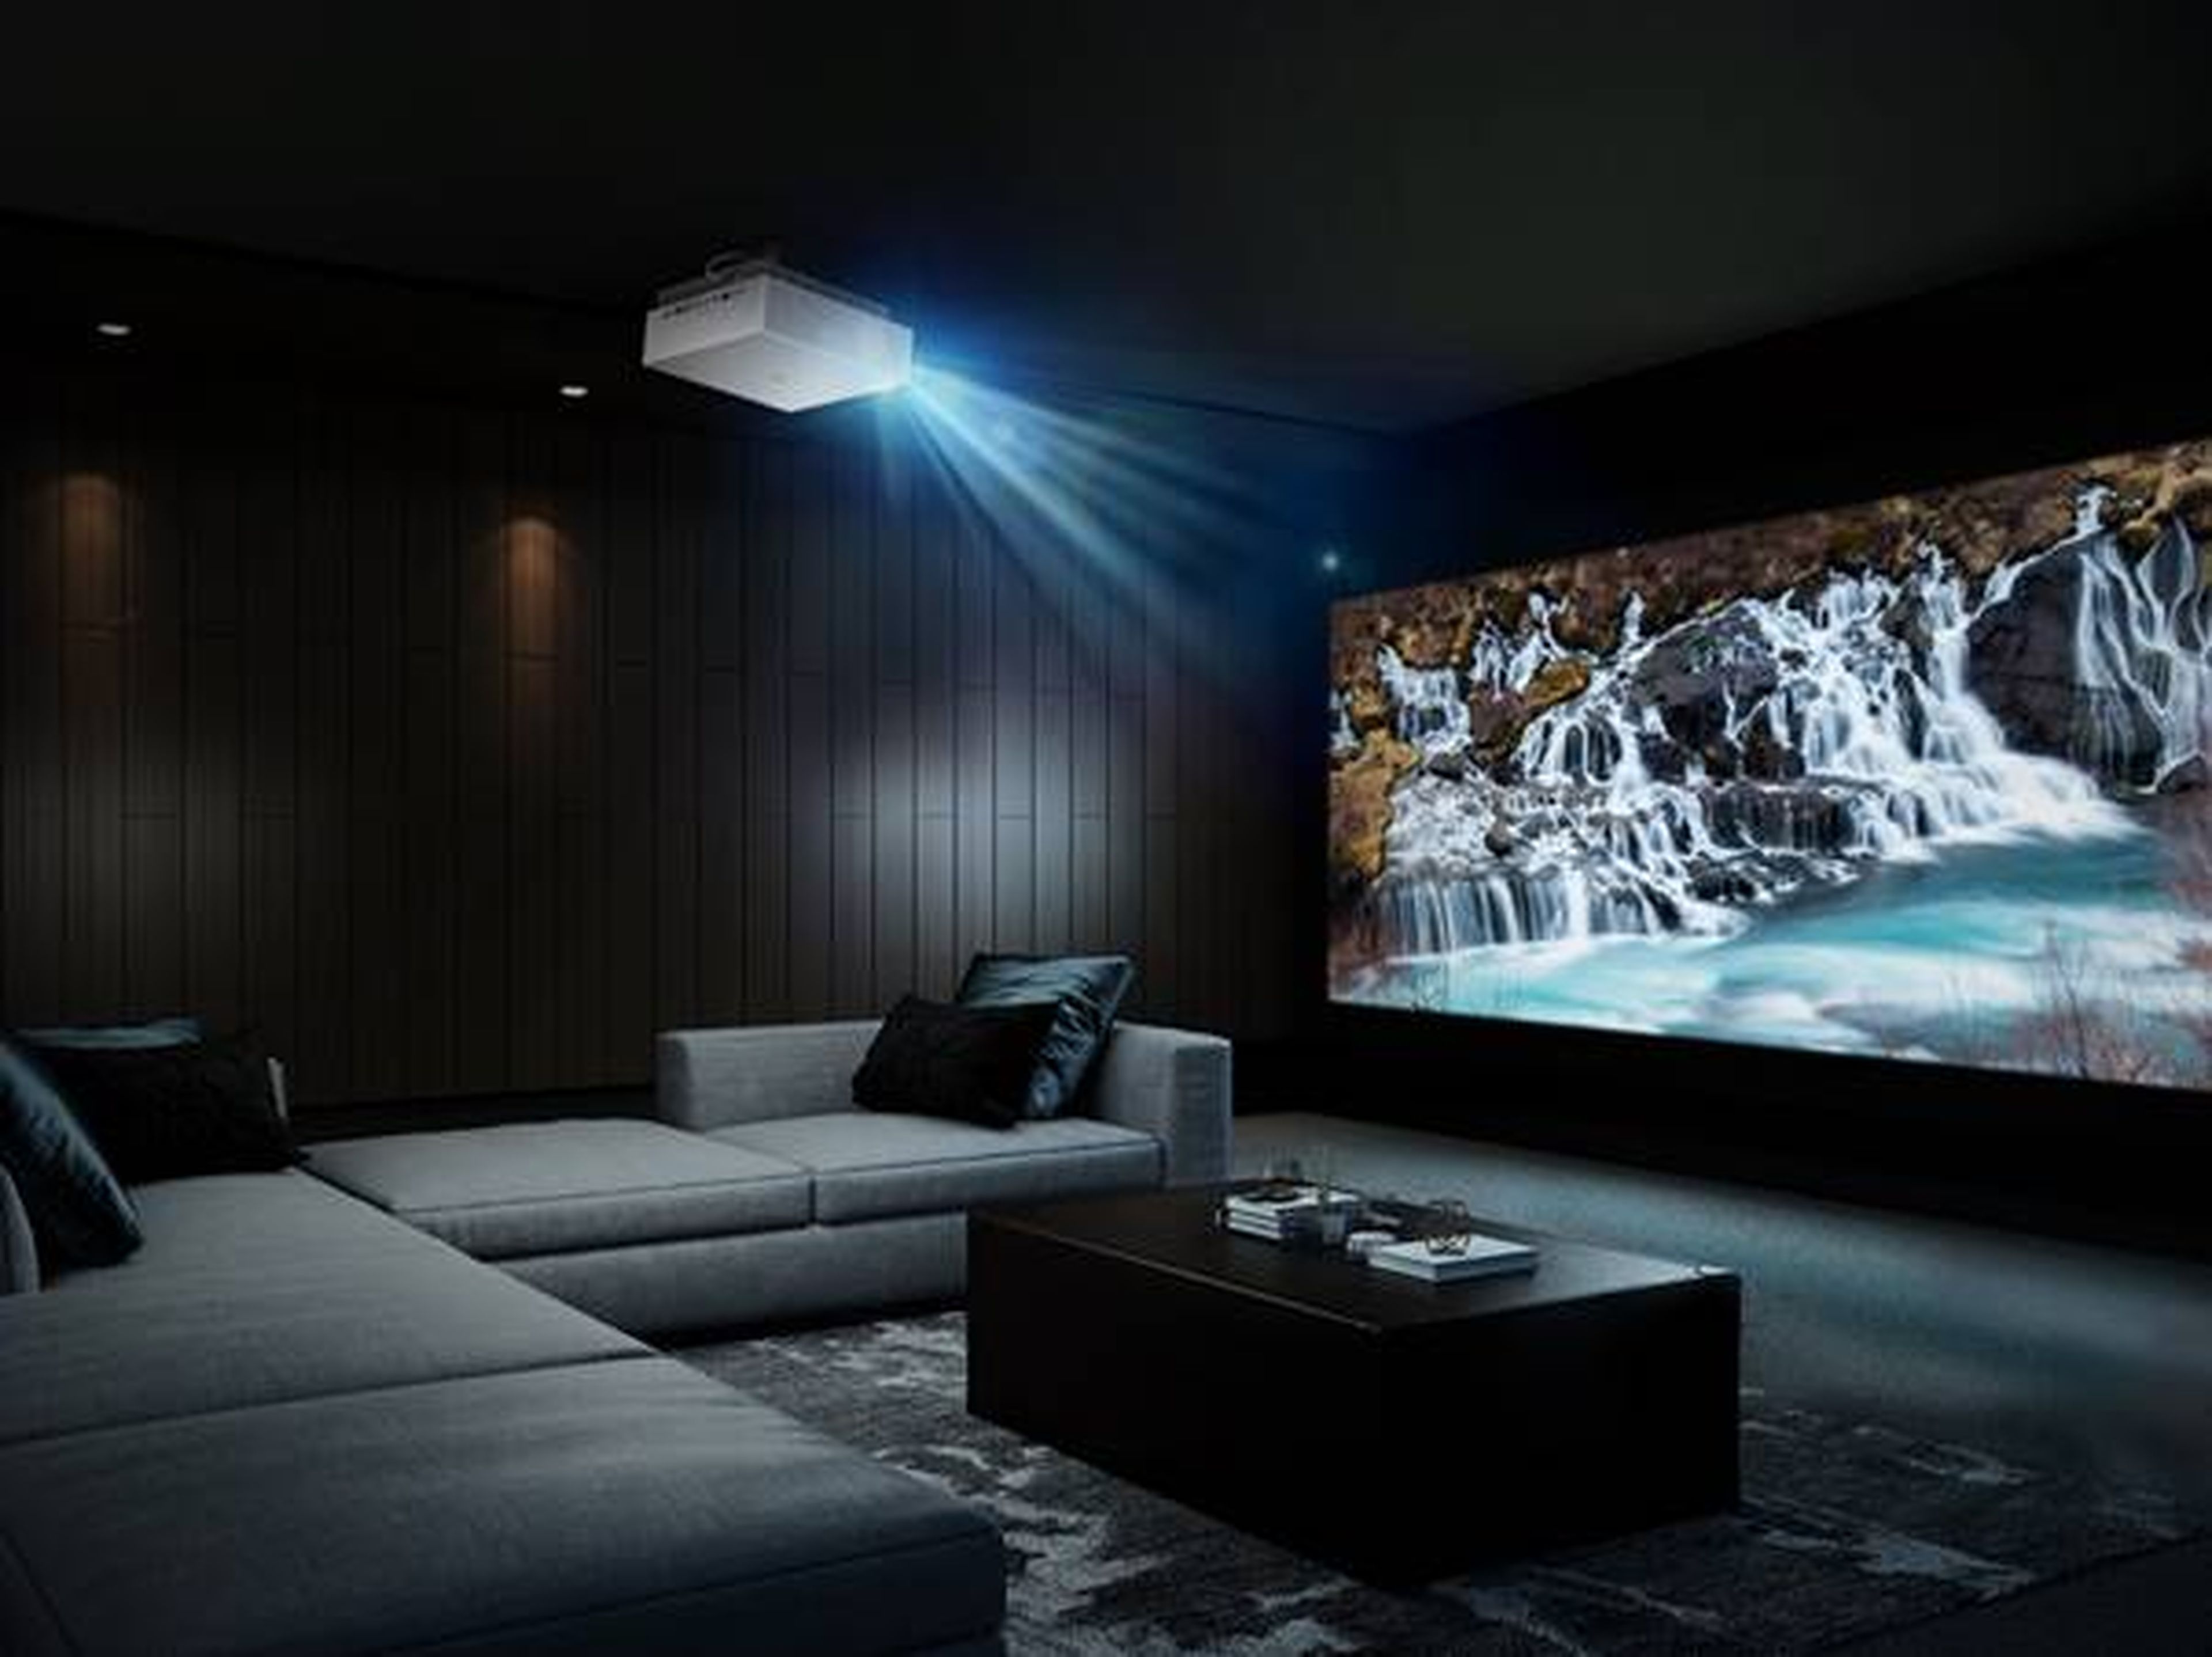 El proyector láser CineBeam 4K de LG con pantalla de hasta 100